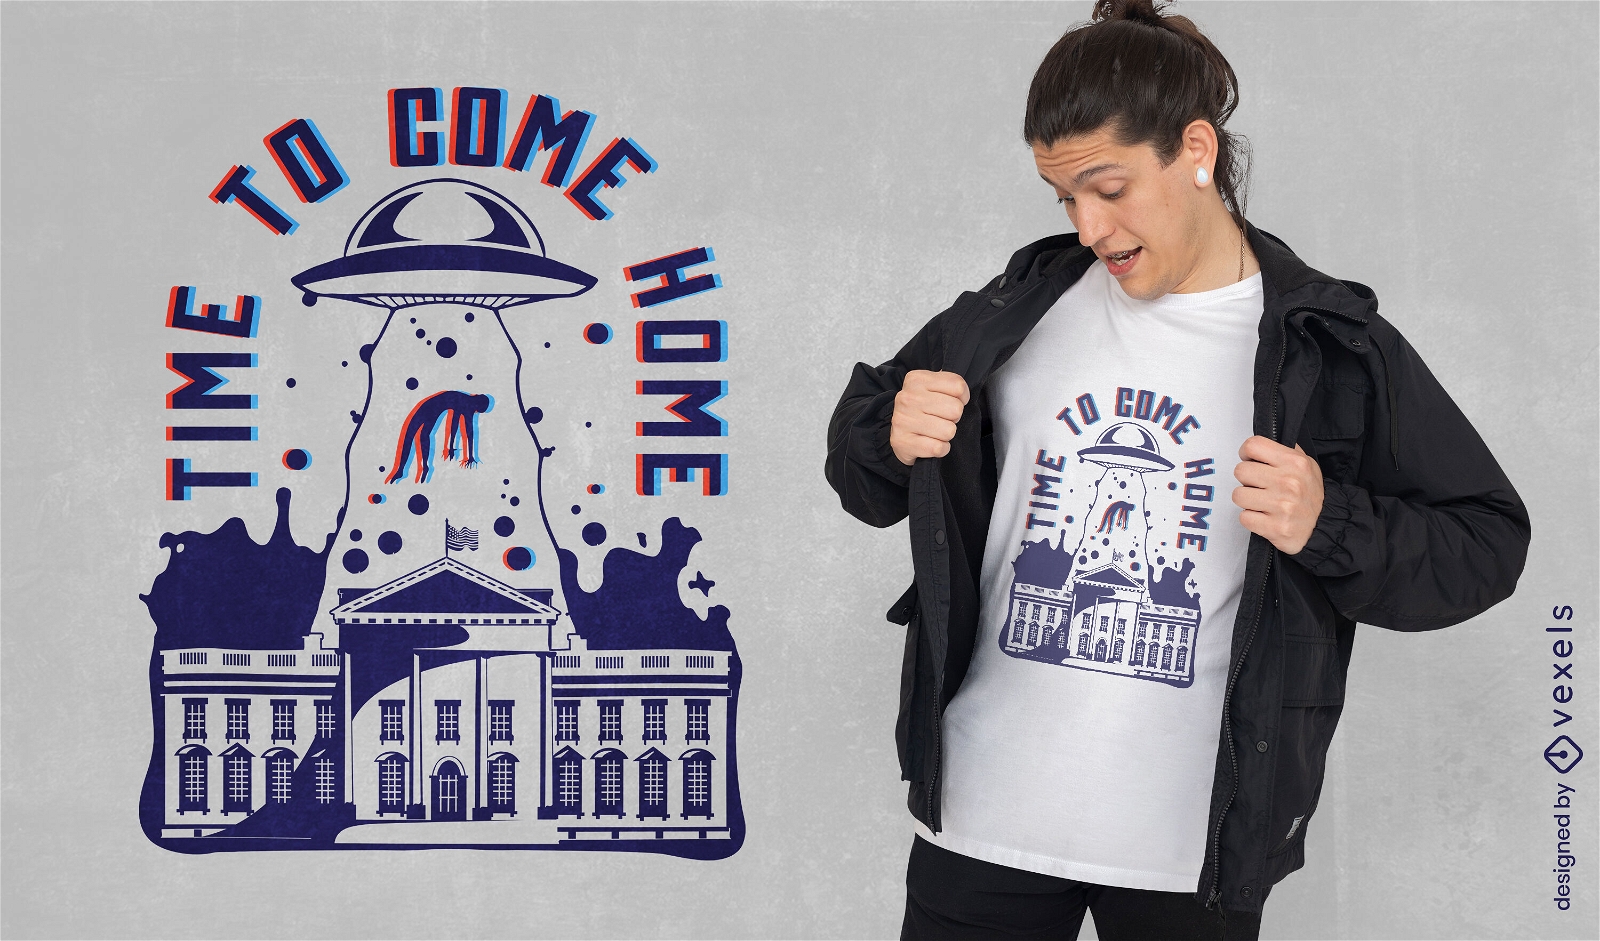 Entführung durch Außerirdische aus dem T-Shirt-Design des Weißen Hauses